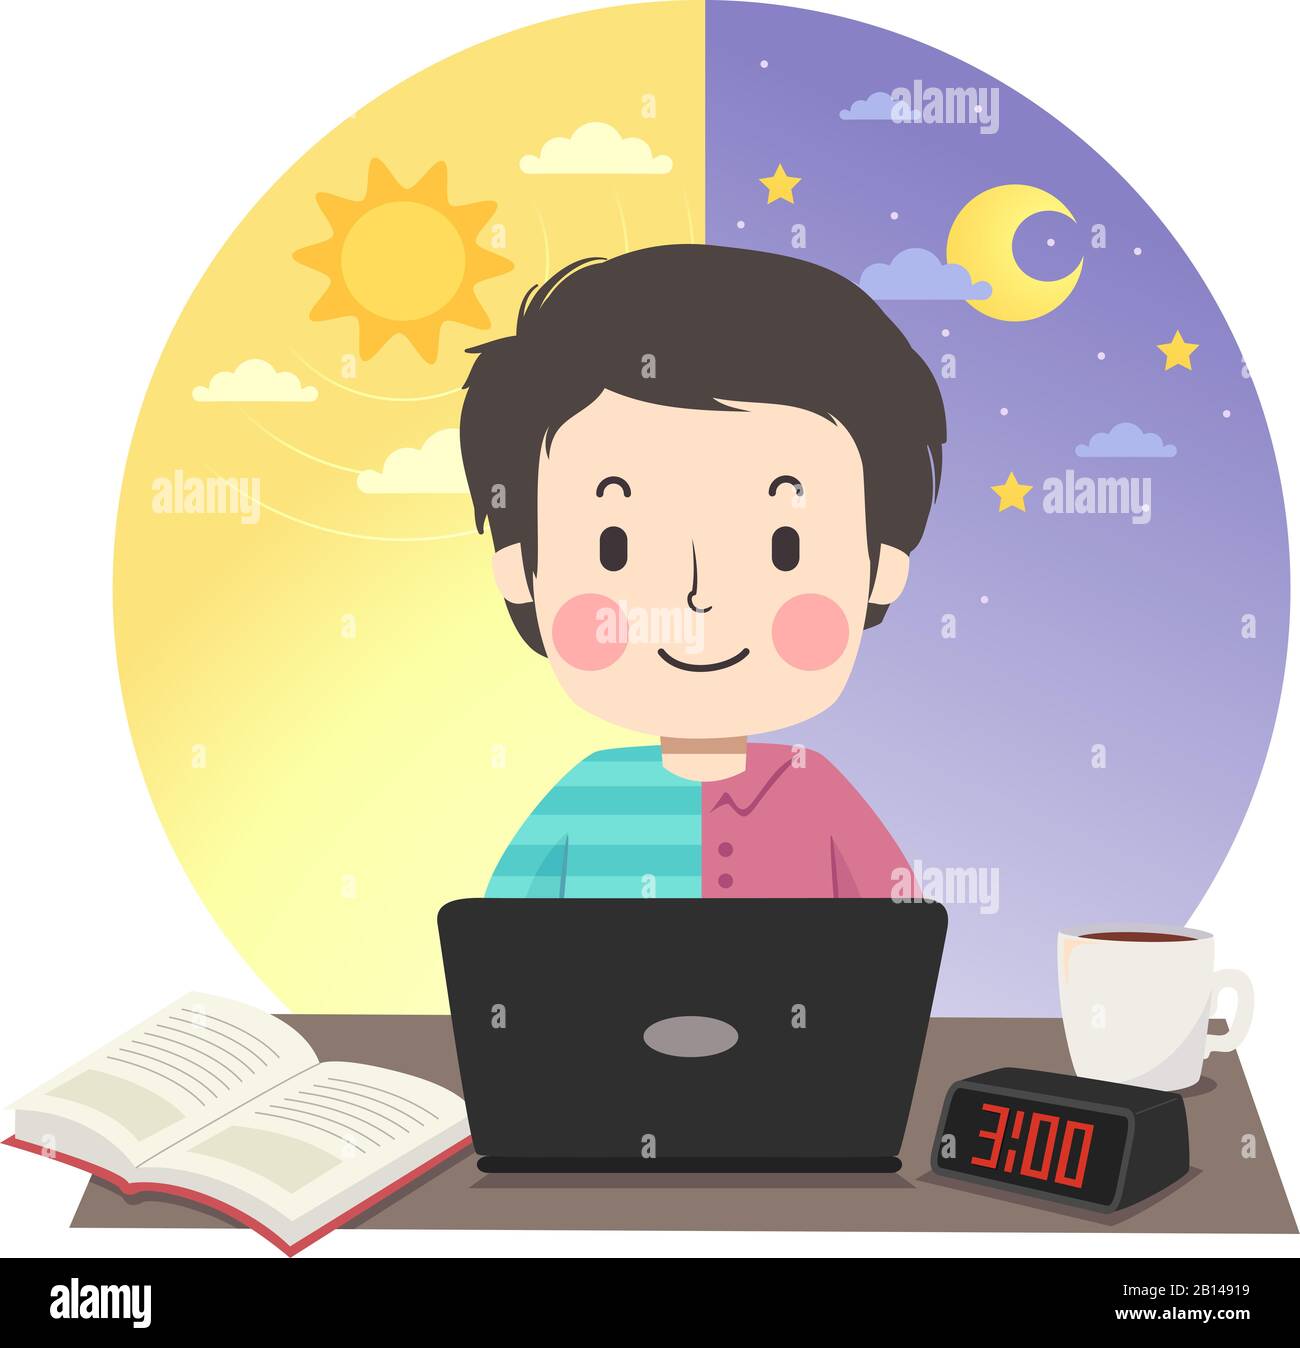 Ilustración de un chico adolescente Que Lleva Media camisa y media camiseta  y Estudia con ordenador portátil, libro y reloj de escritorio digital en la  mesa con el sol De La Mañana